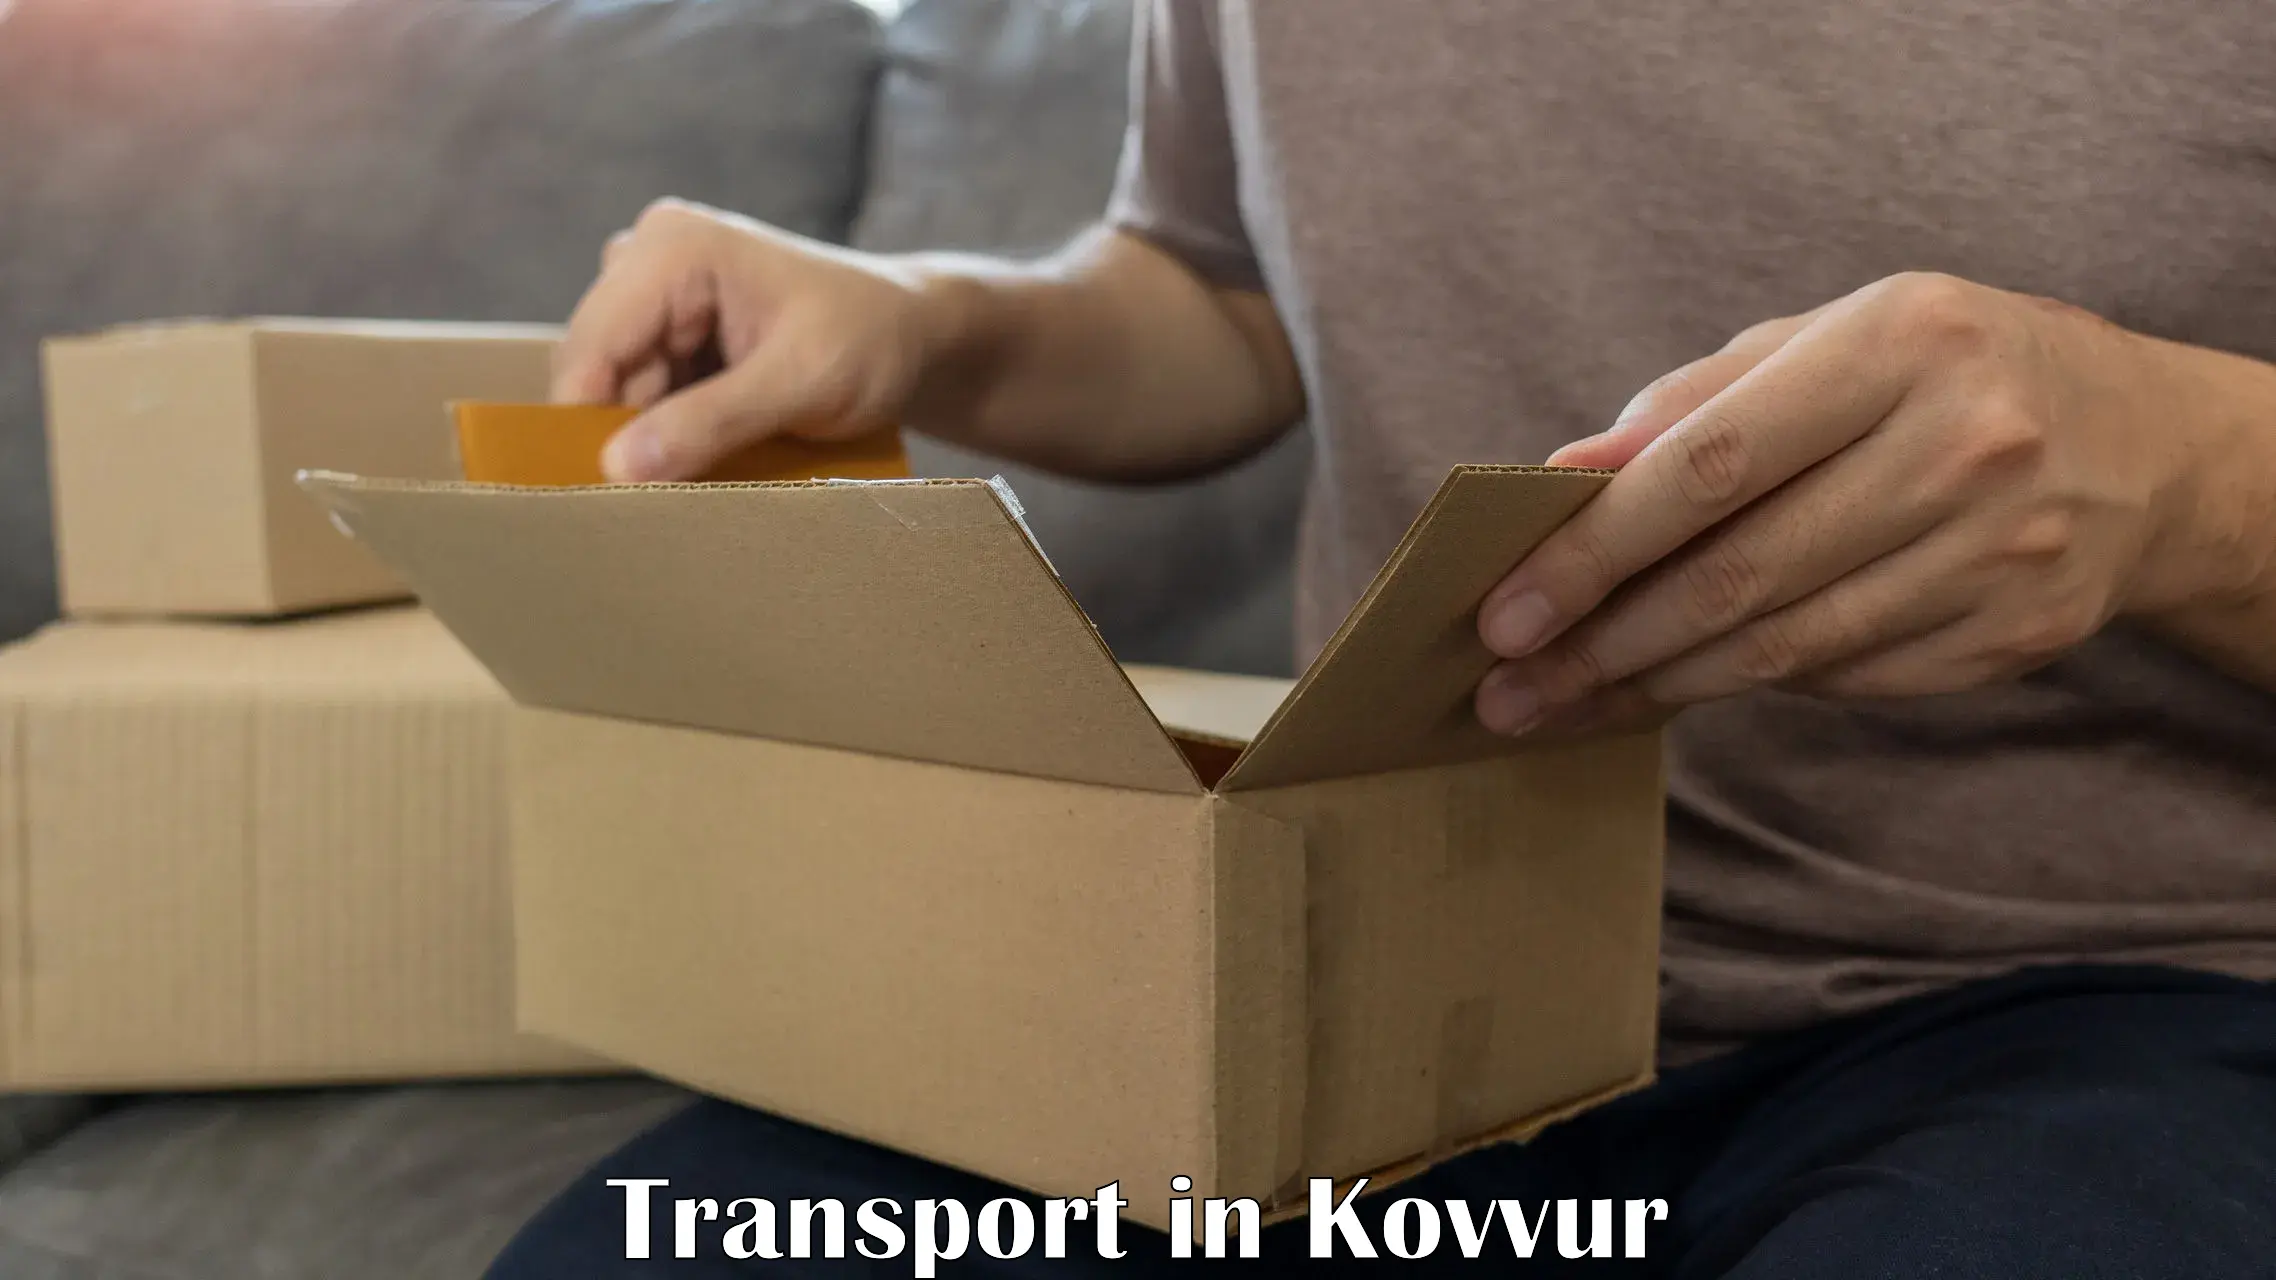 Nearby transport service in Kovvur